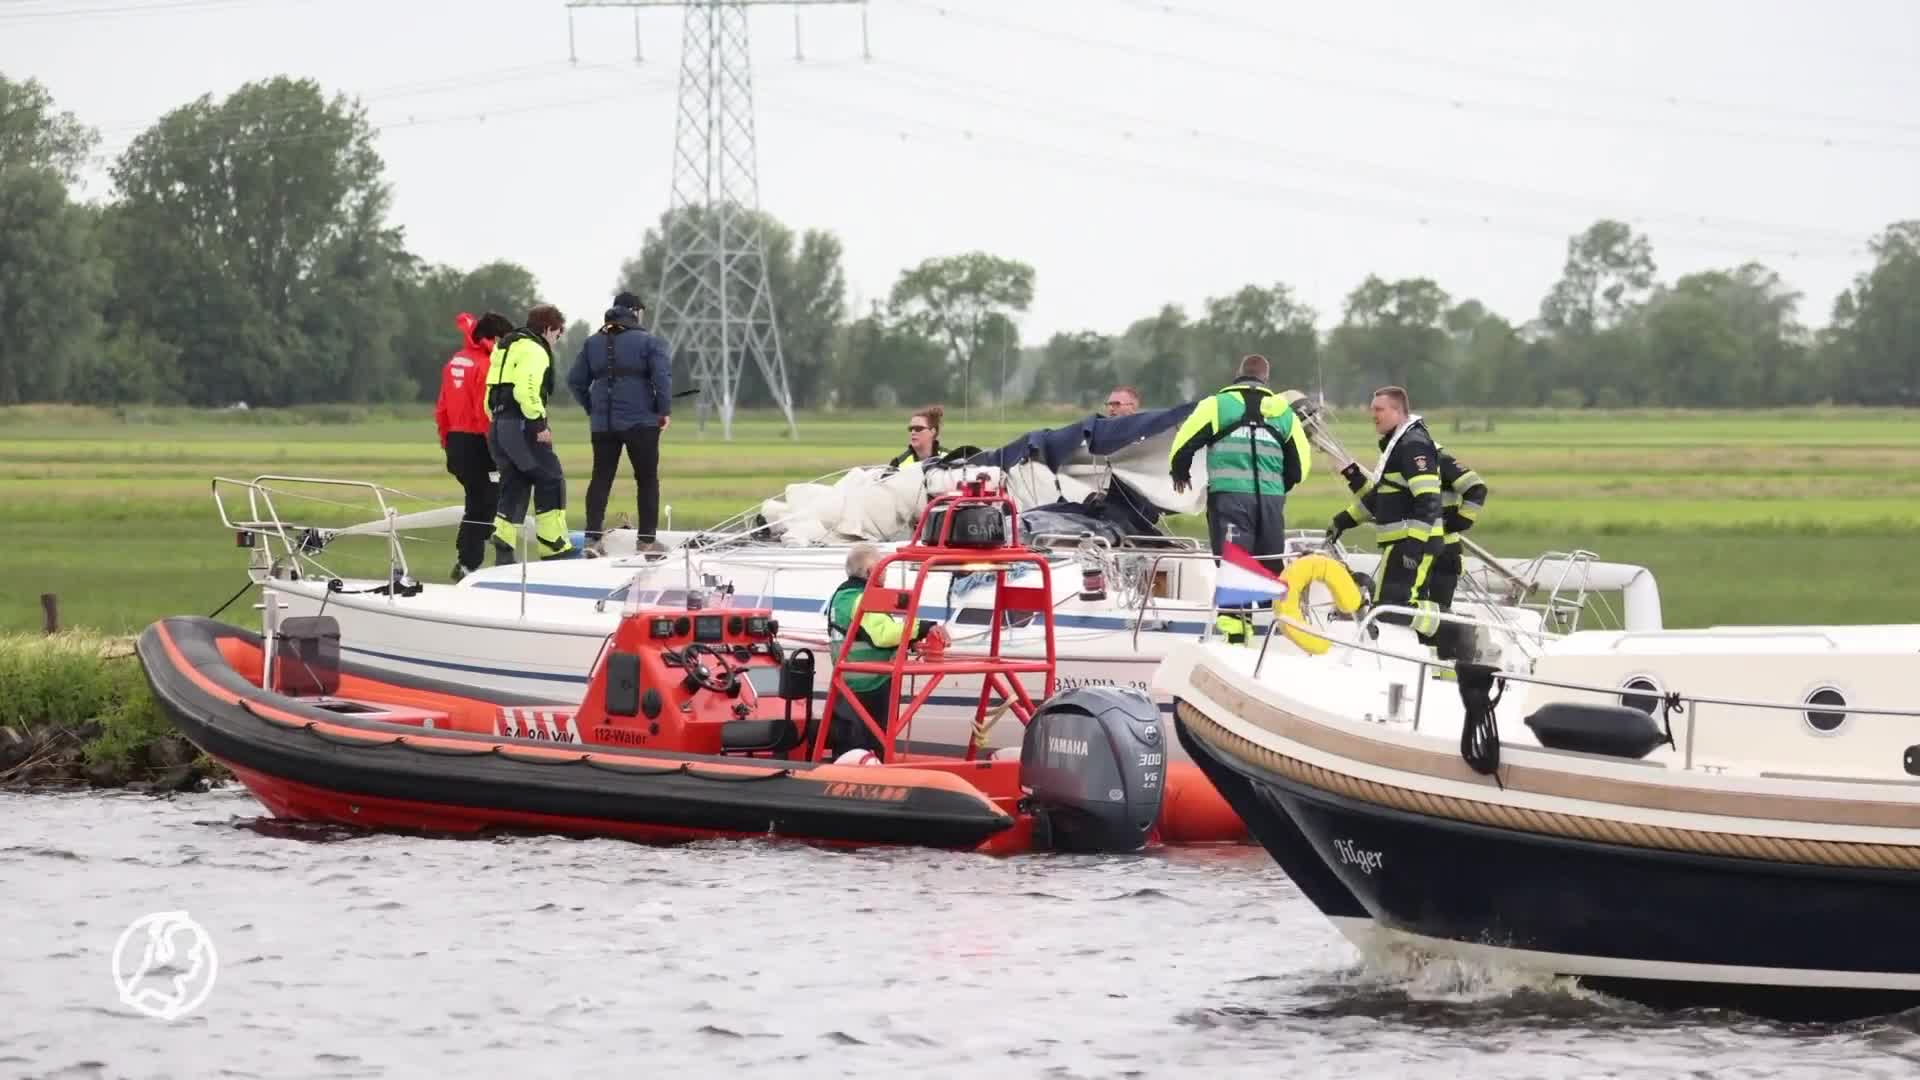 Zeilboot raakt vast onder spoorbrug, mast breekt af: twee mensen gewond